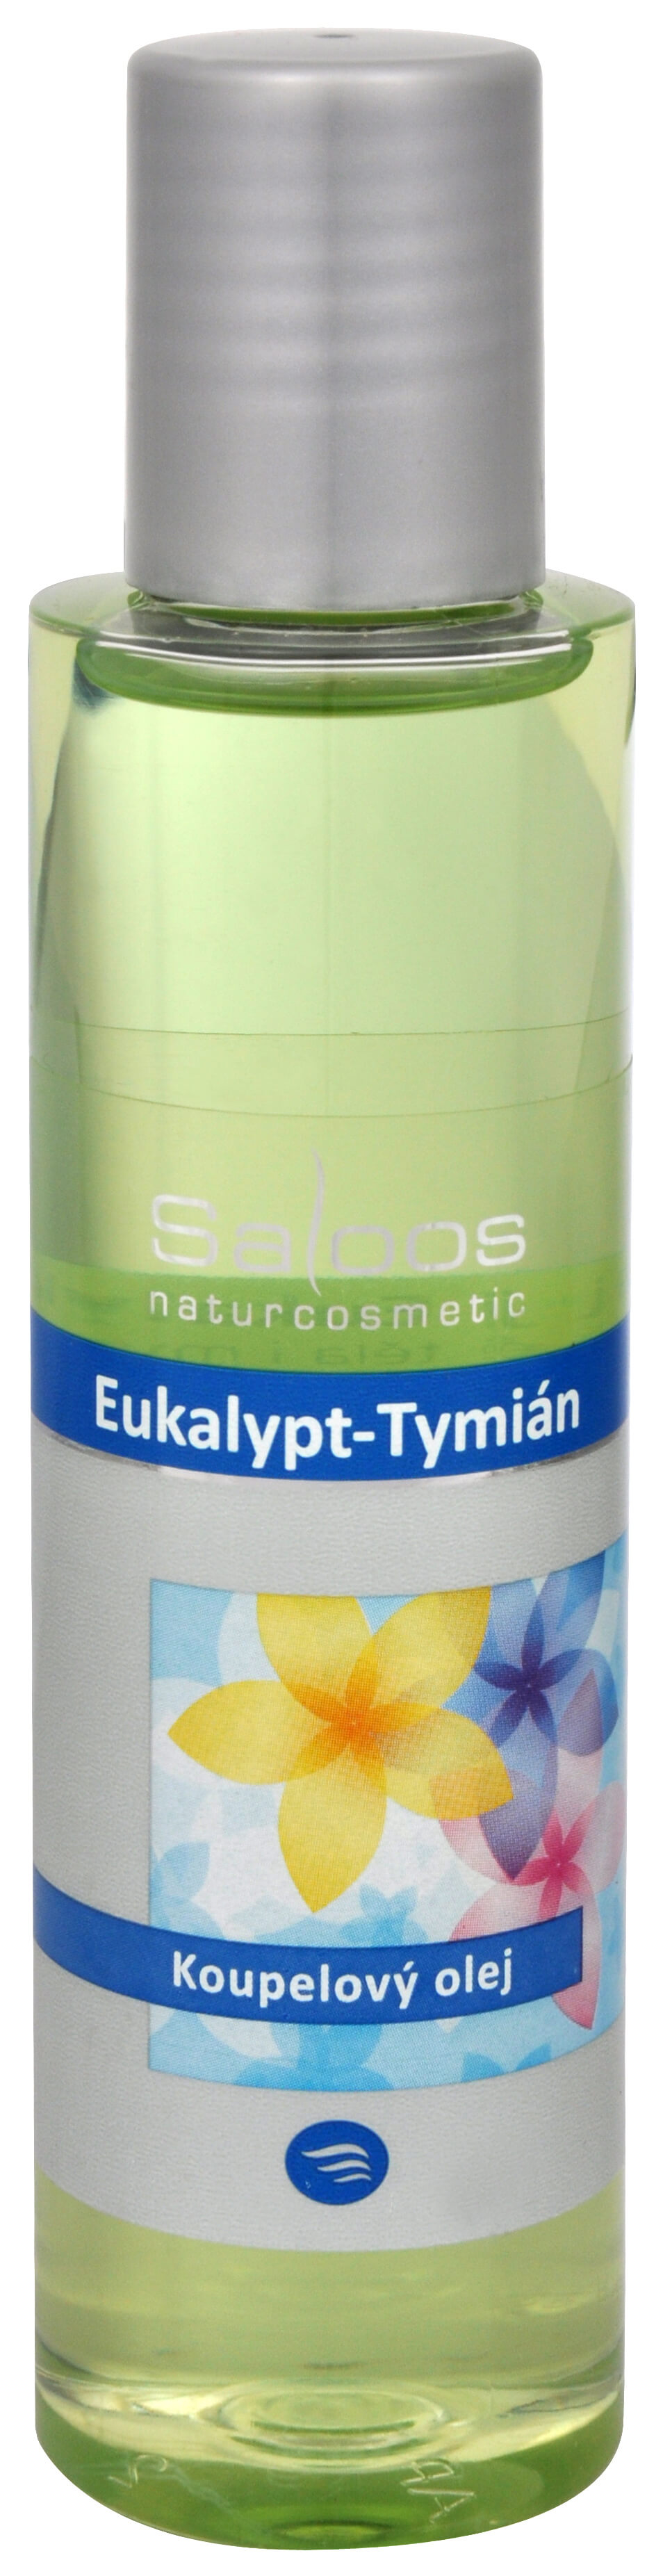 Zobrazit detail výrobku Saloos Koupelový olej - Eukalypt-Tymián 125 ml